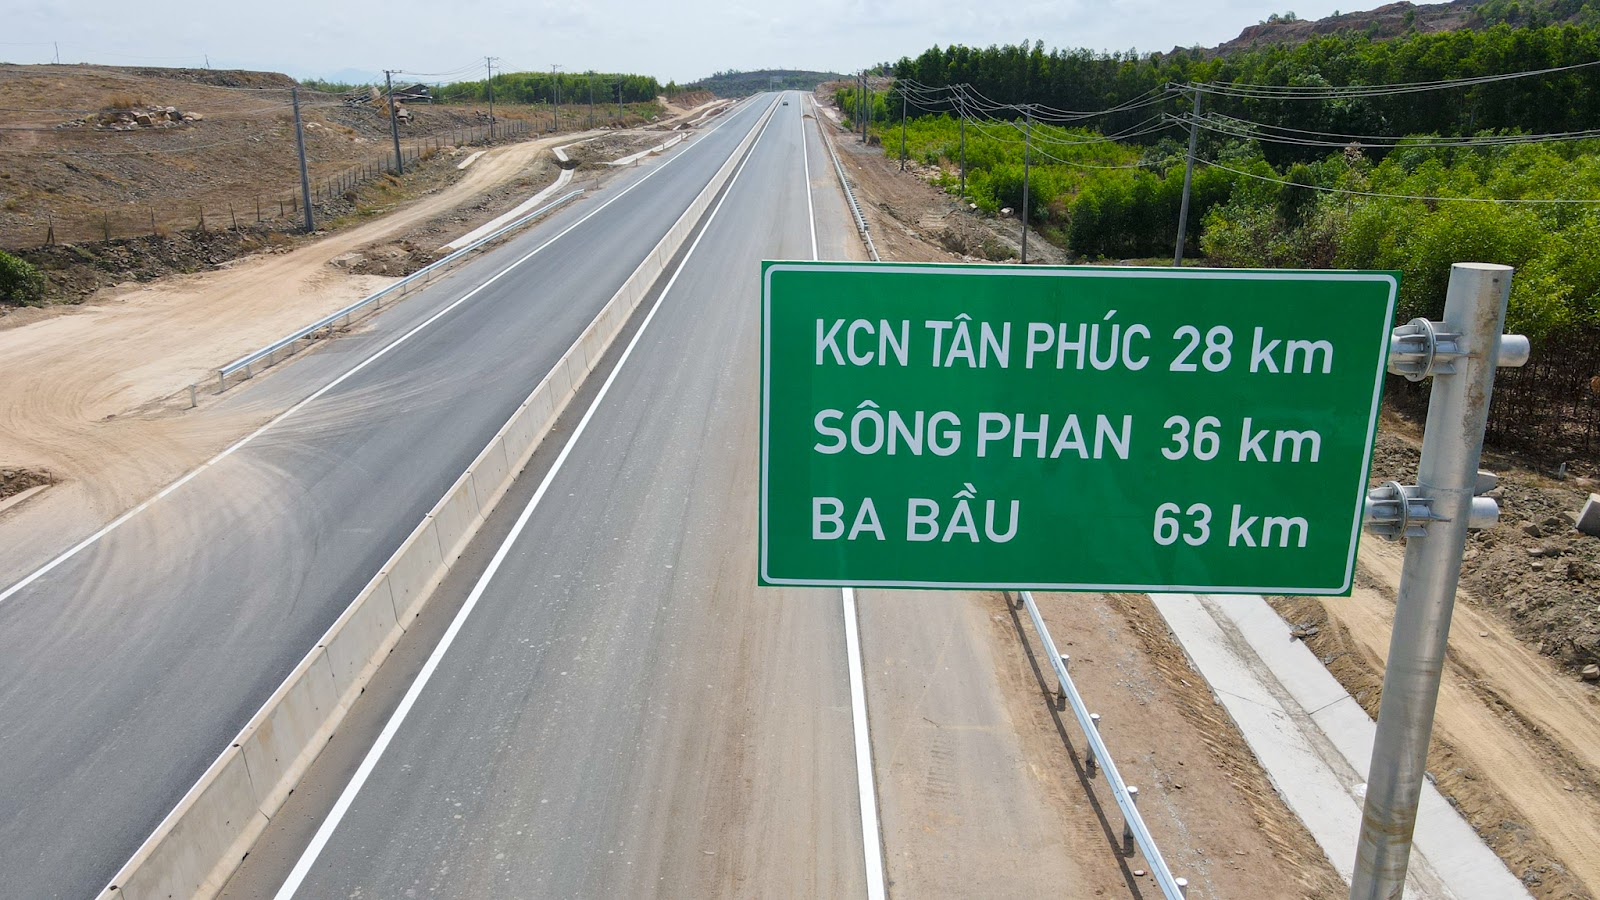 Toàn cảnh cao tốc dài 99 km giúp đi từ TP.HCM đến Phan Thiết trong 2 giờ - Ảnh 3.